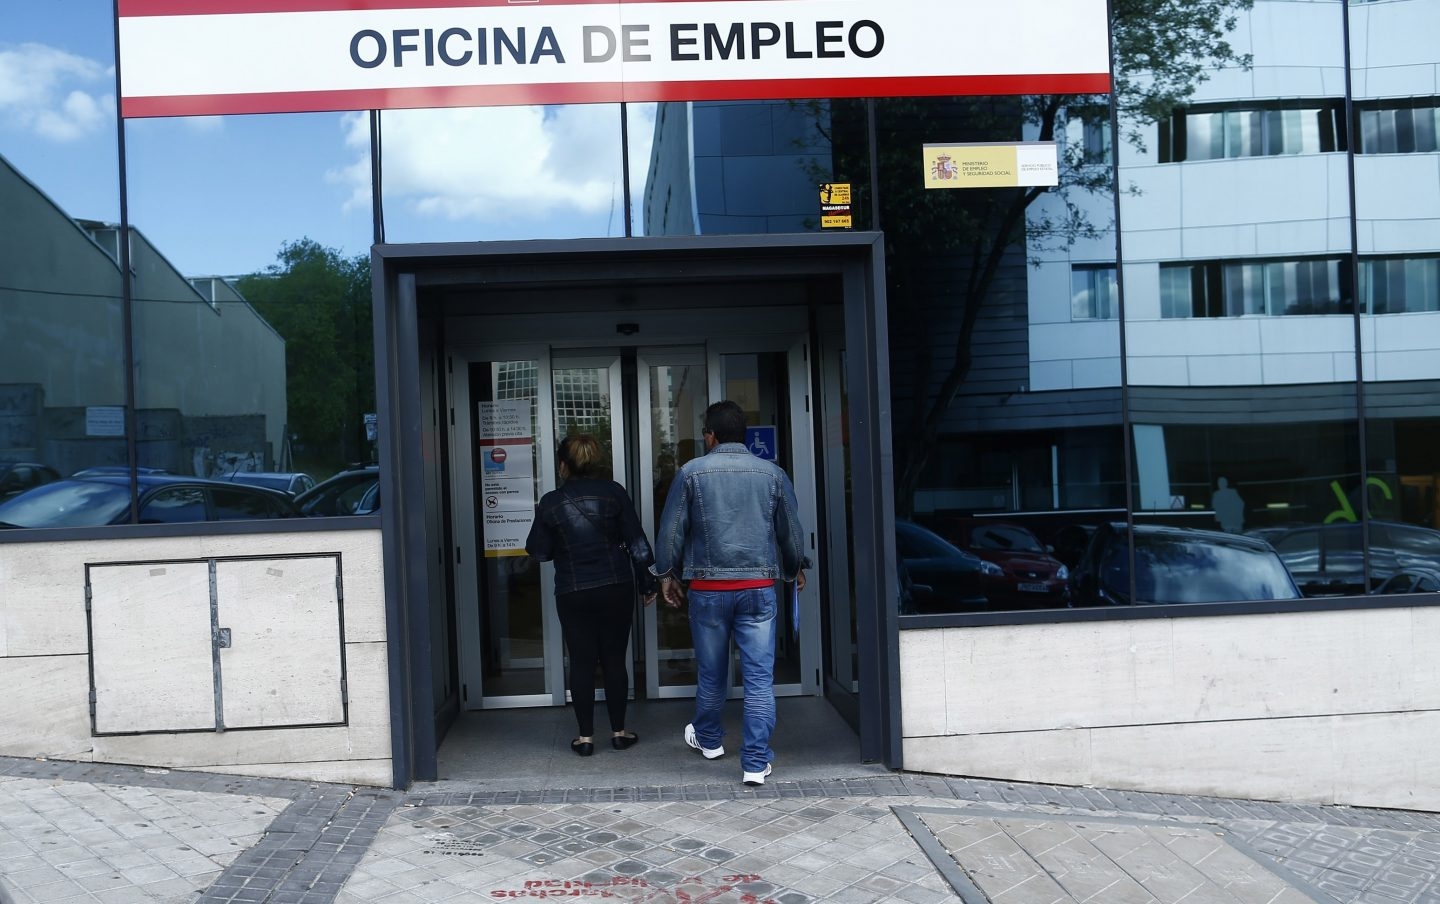 Una oficina de empleo en Madrid. Archivo.